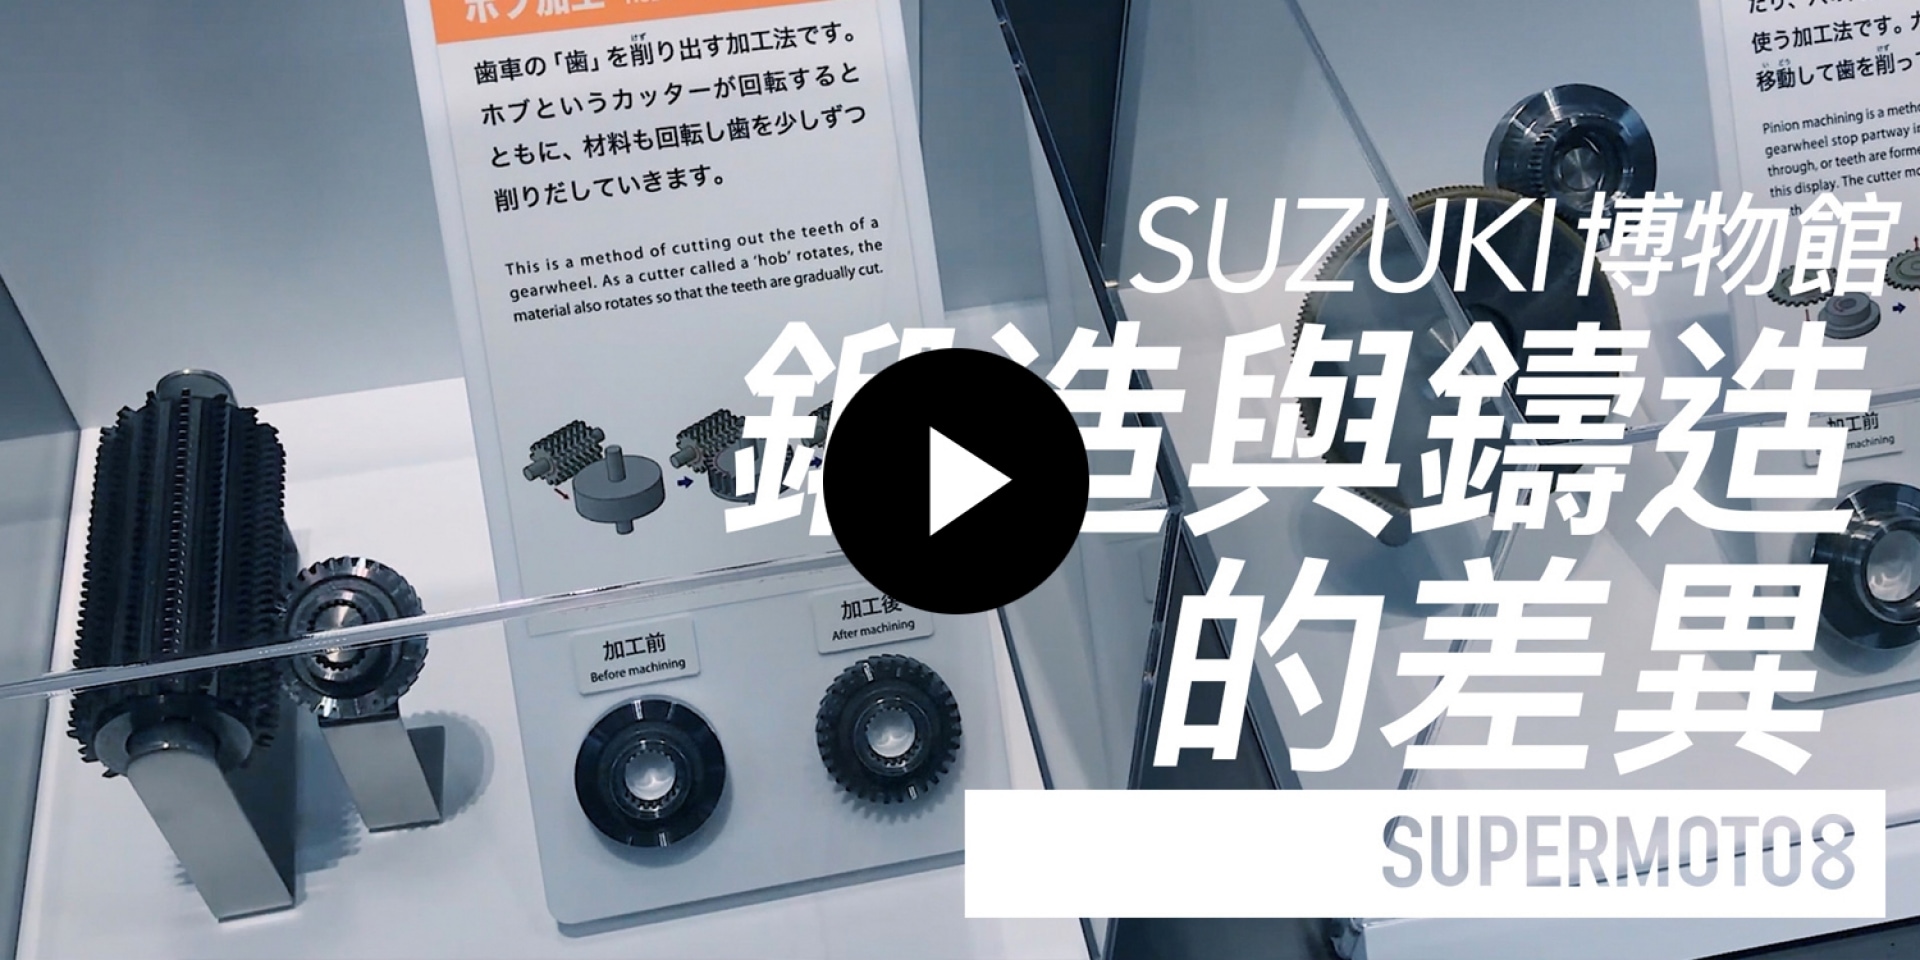 SUZUKI博物館。鍛造與鑄造的差異